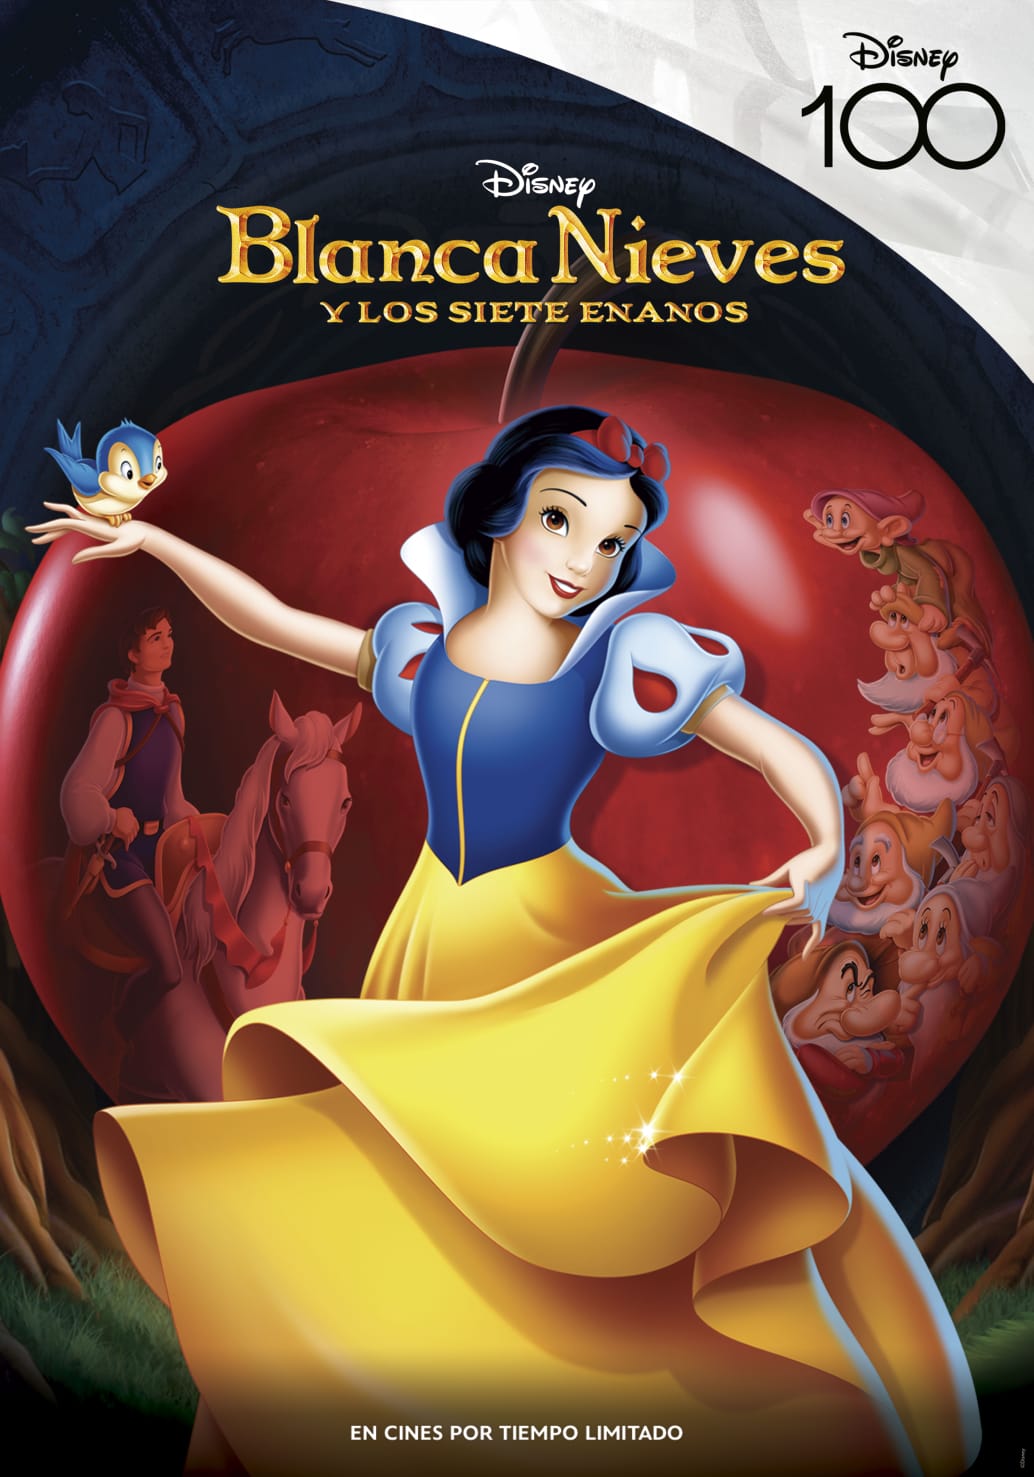 Los clásicos animados de Disney regresan a cines para celebrar su 100° Aniversario 4